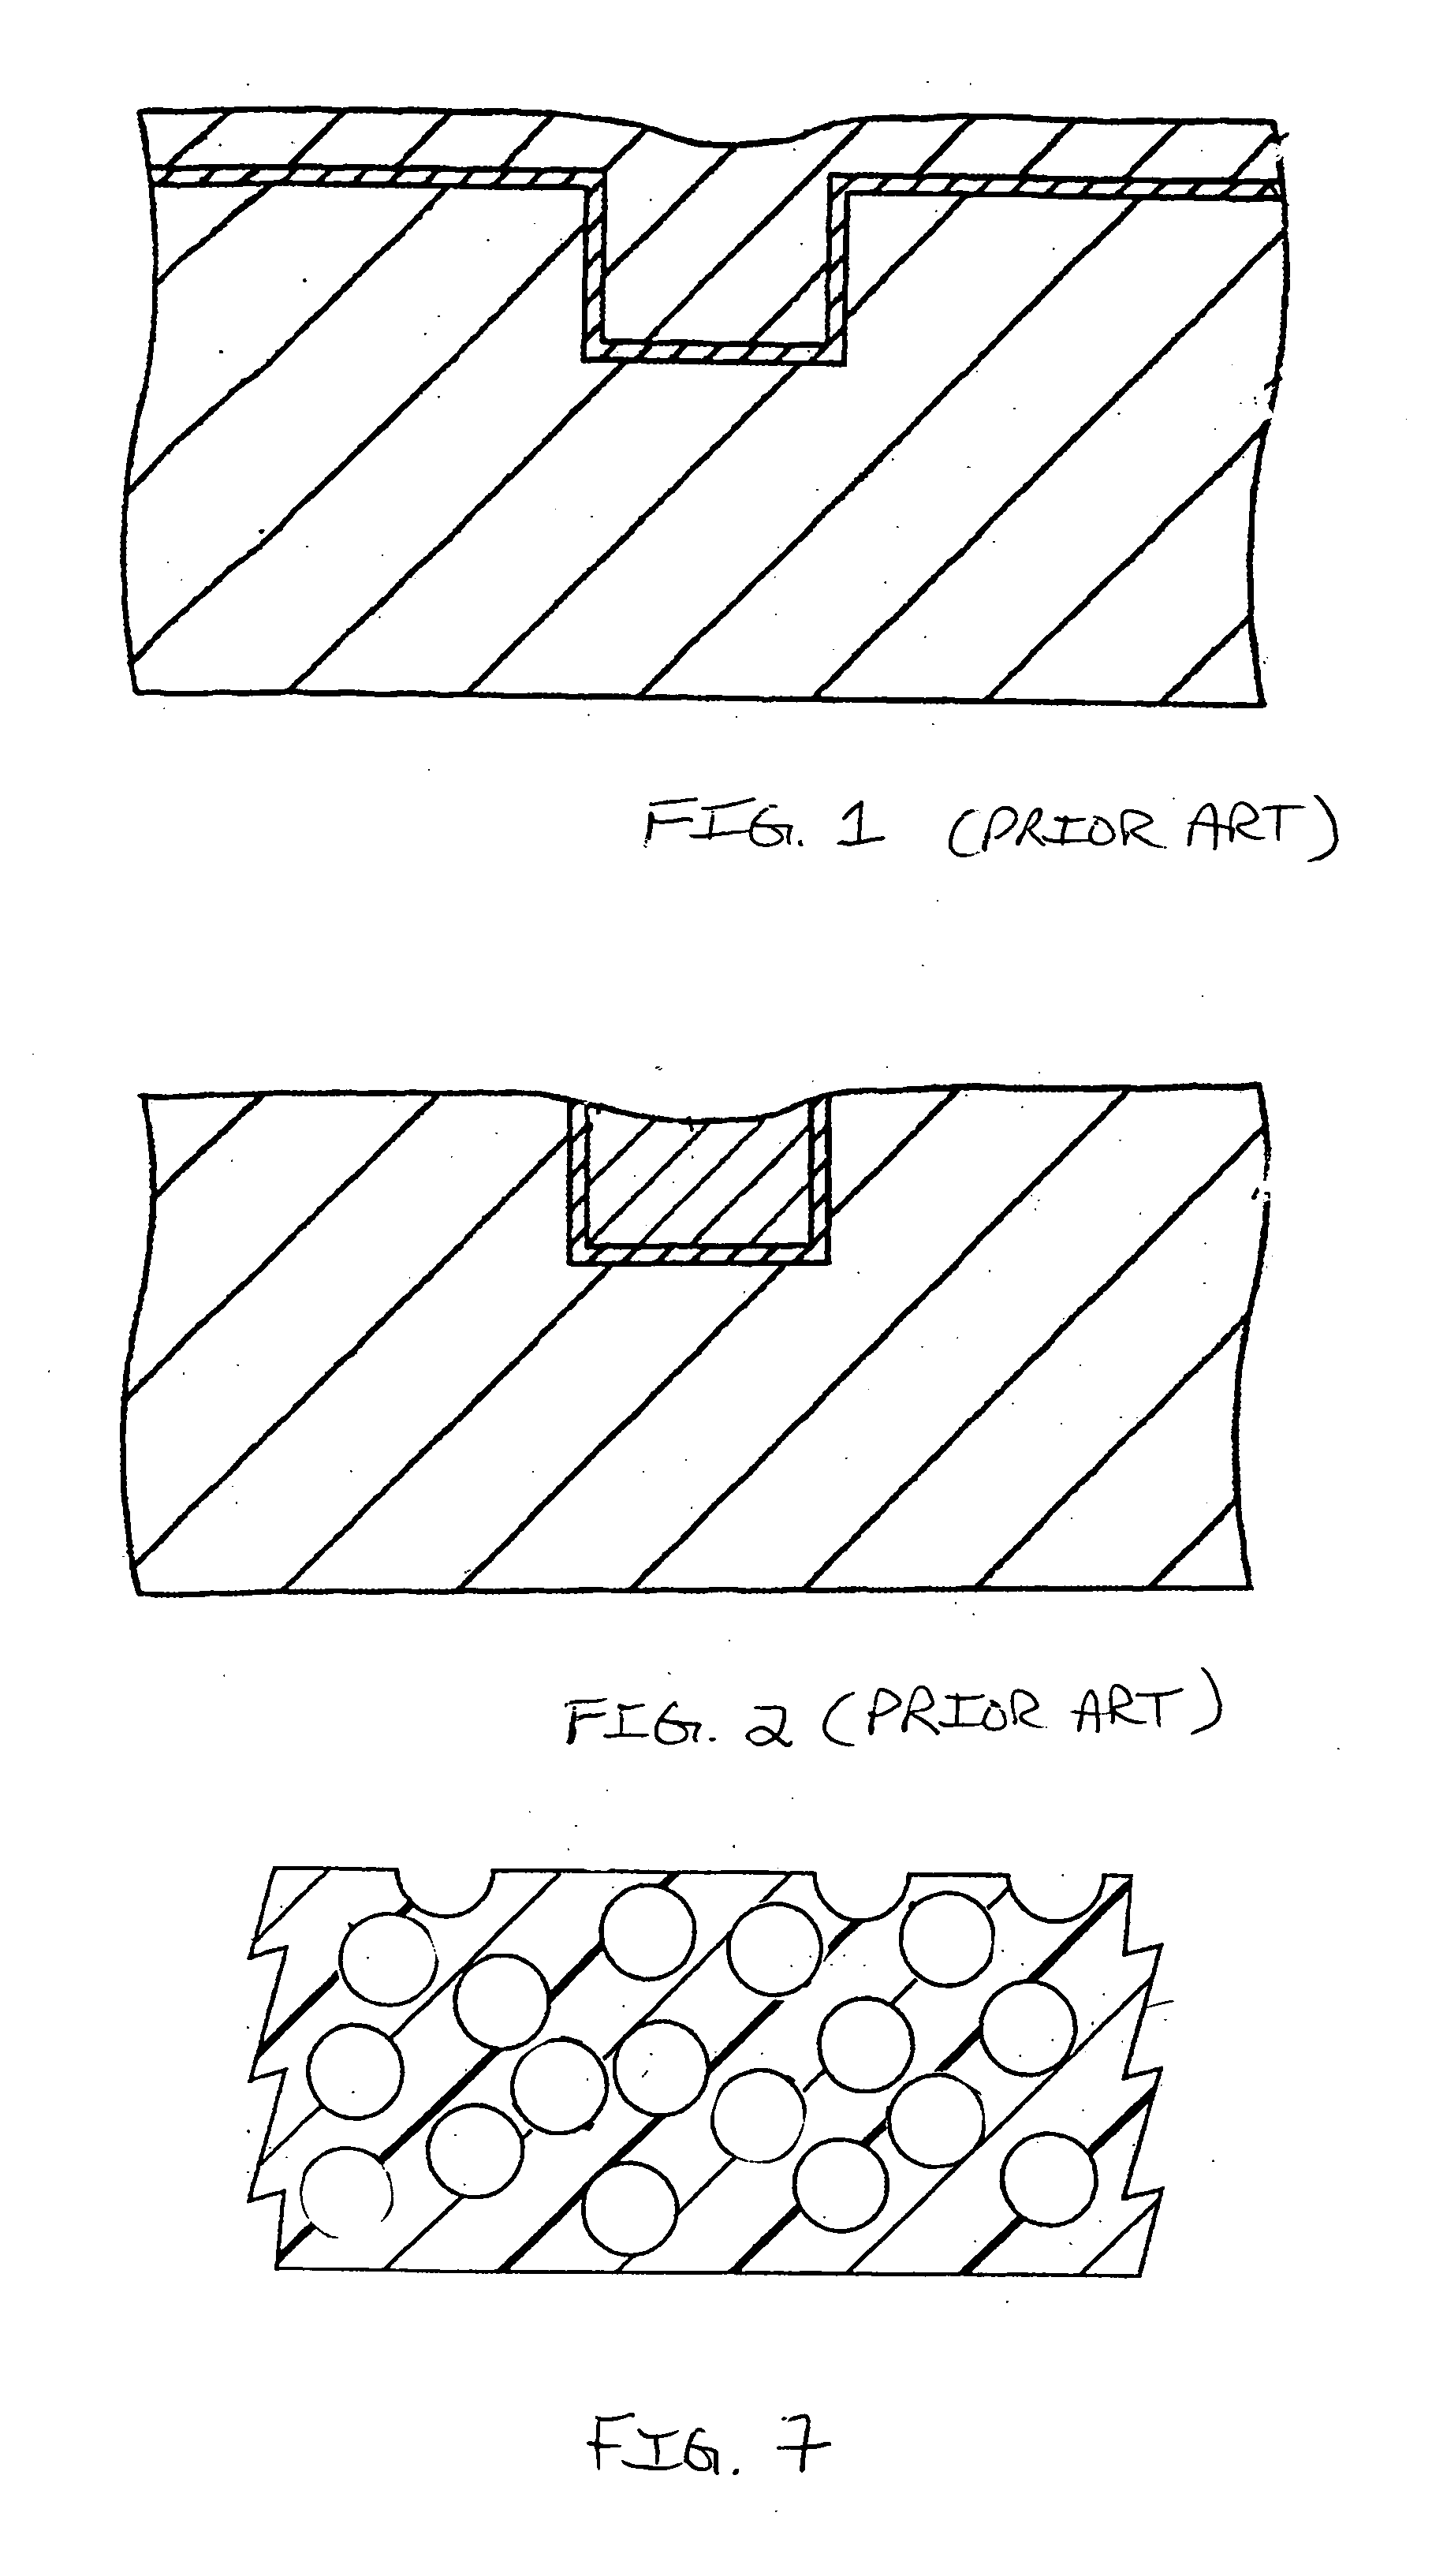 Polishing pad and method of making same